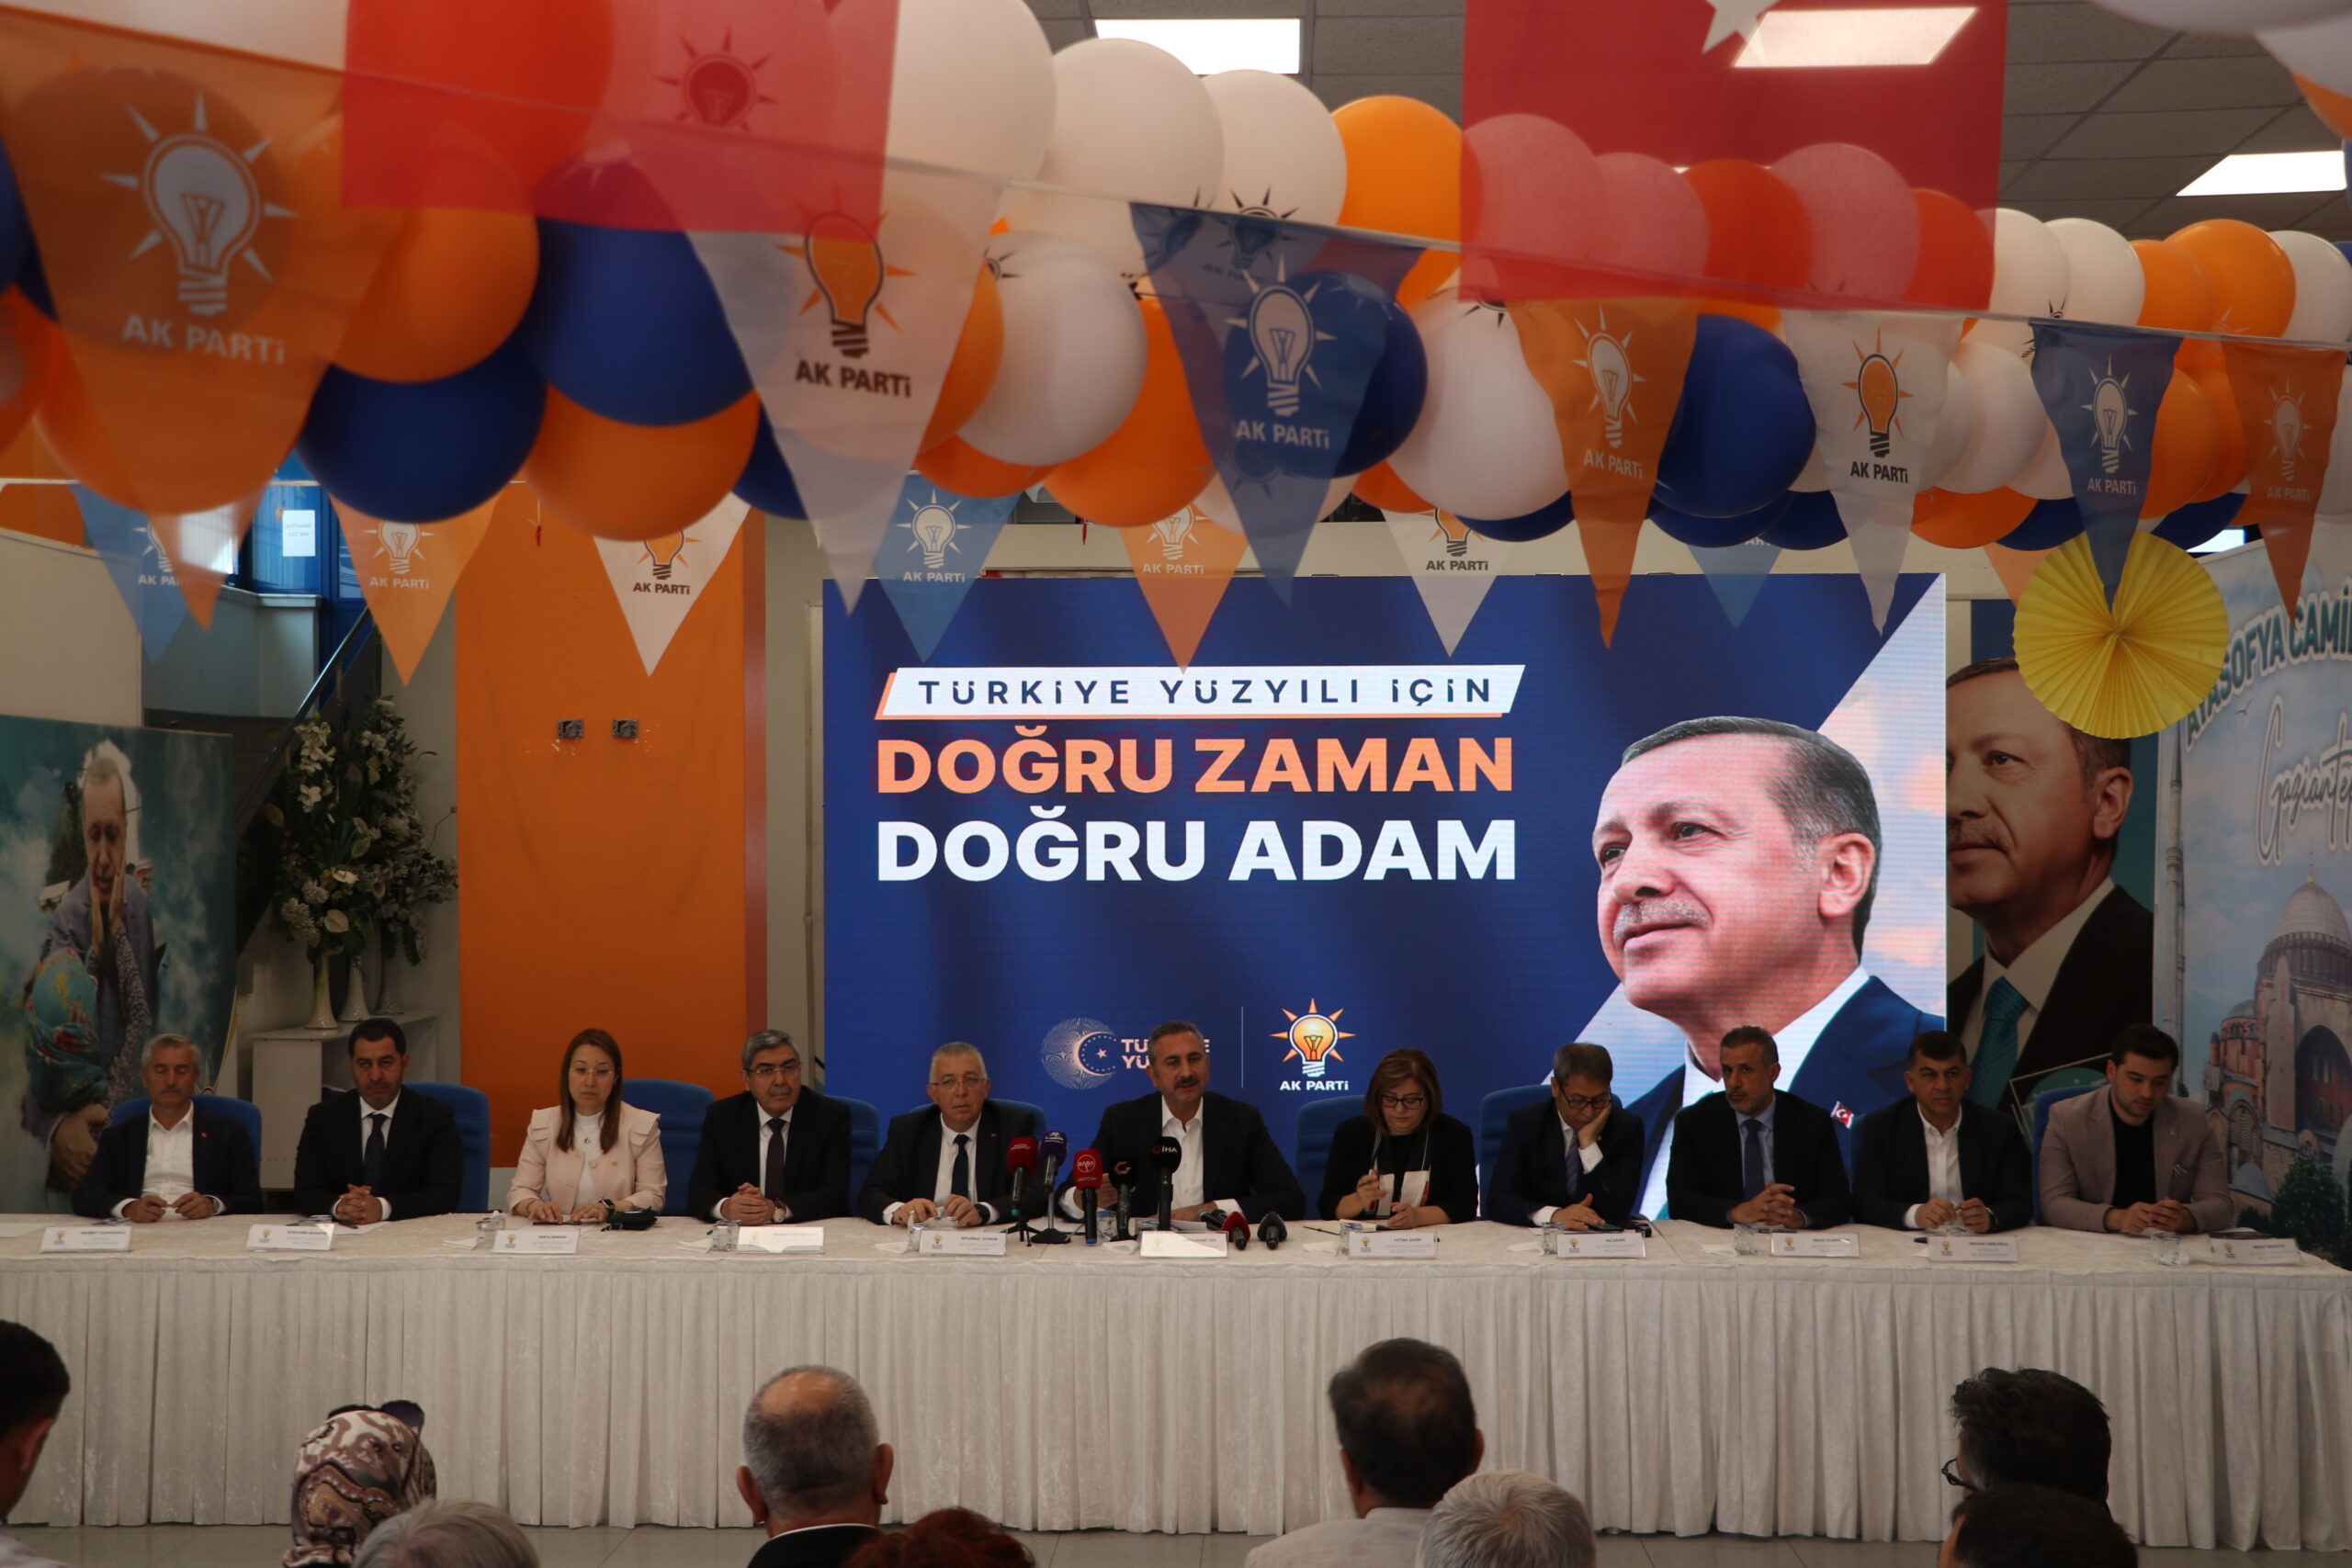 AK Parti Gaziantep milletvekilleri basına tanıtıldı